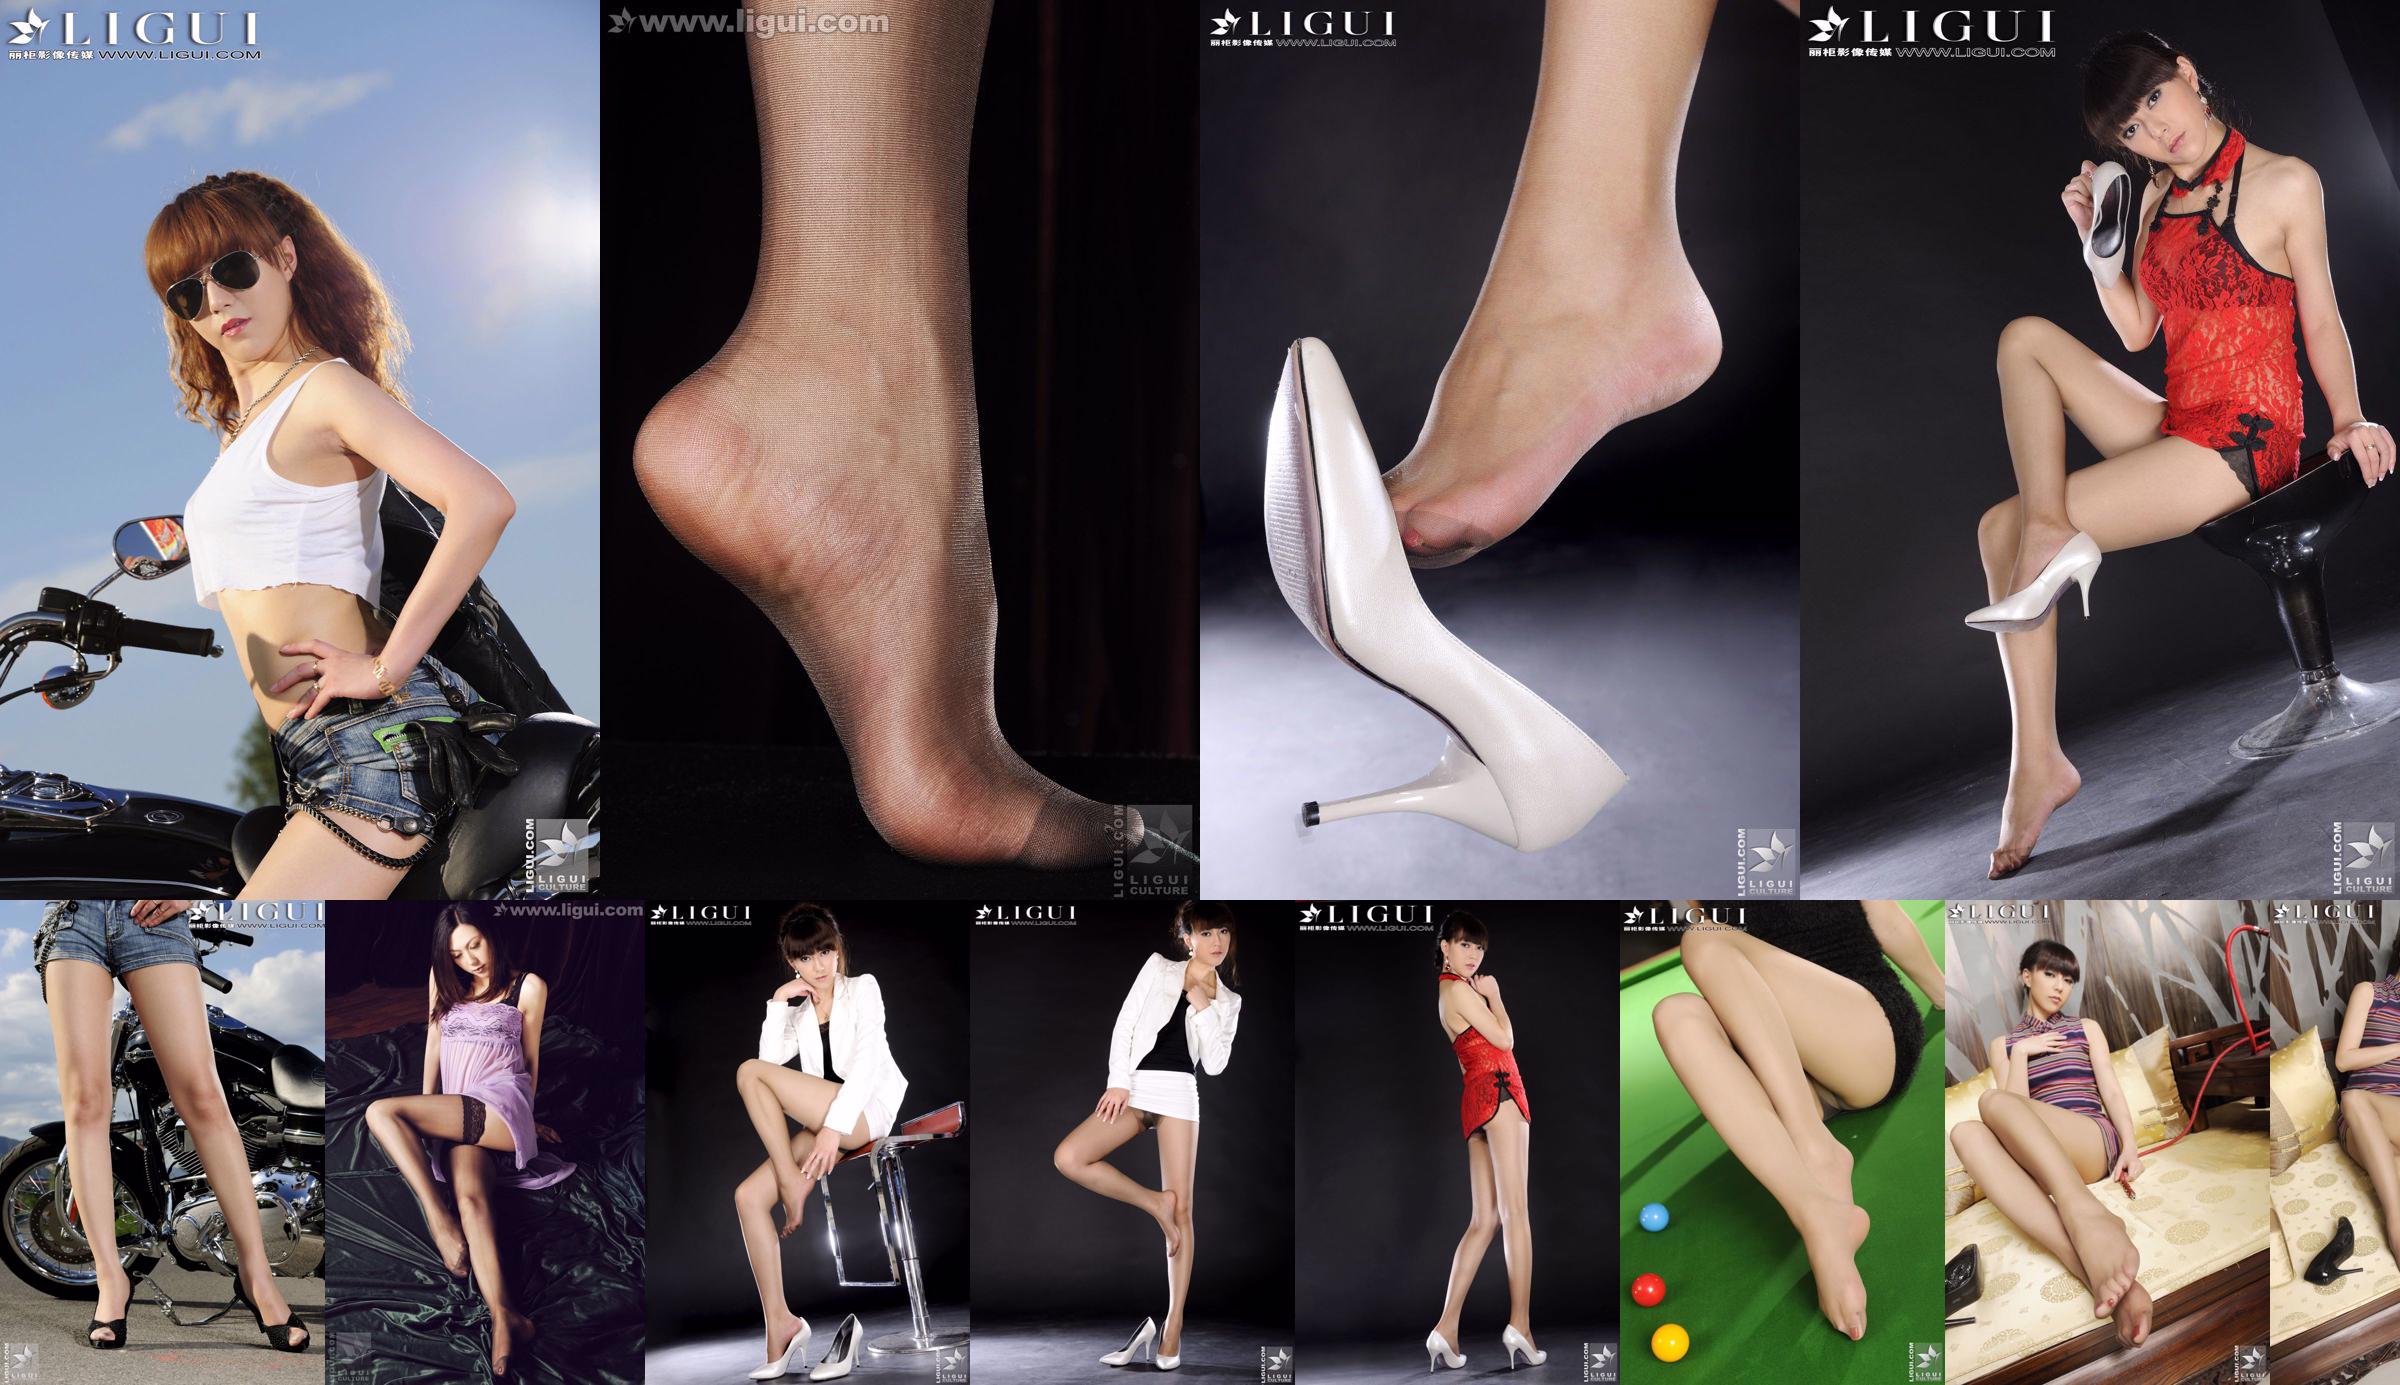 Modello Cherry "Il nuovo favore del mondo della moda" [丽 柜 LiGui] Foto di belle gambe e piedi di giada No.4ba70b Pagina 1